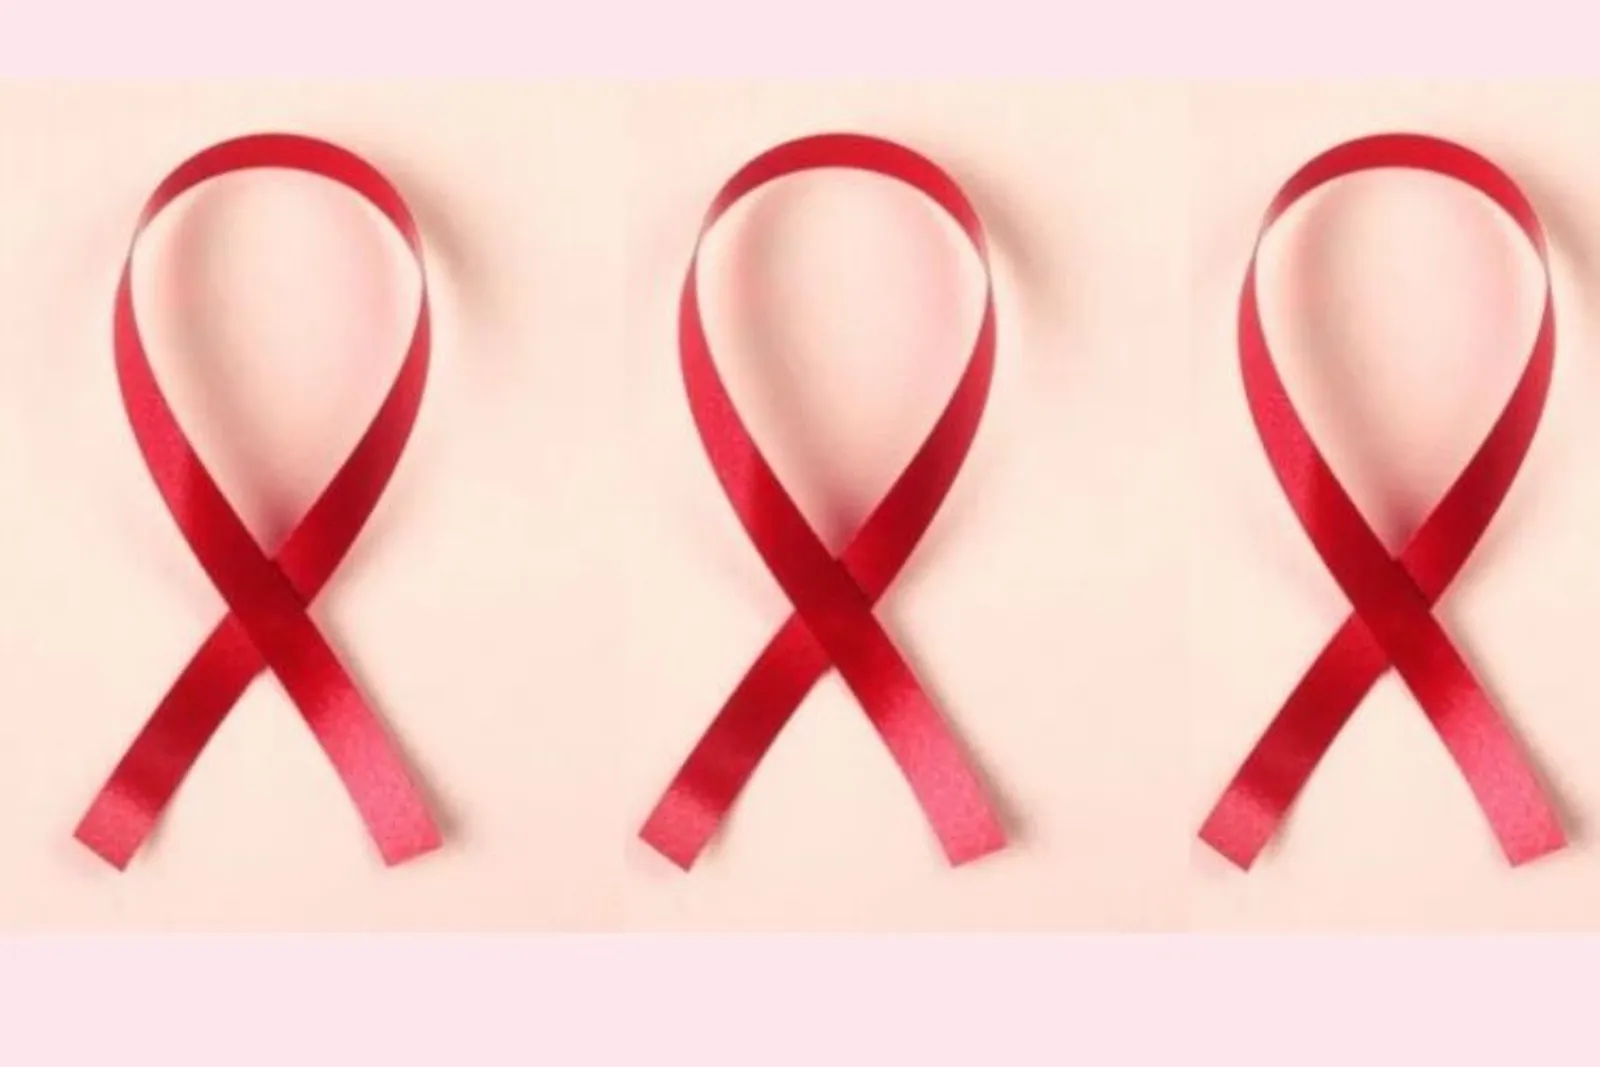 Penting untuk Waspada, Kenali 7 Penyebab HIV Berikut Ini!